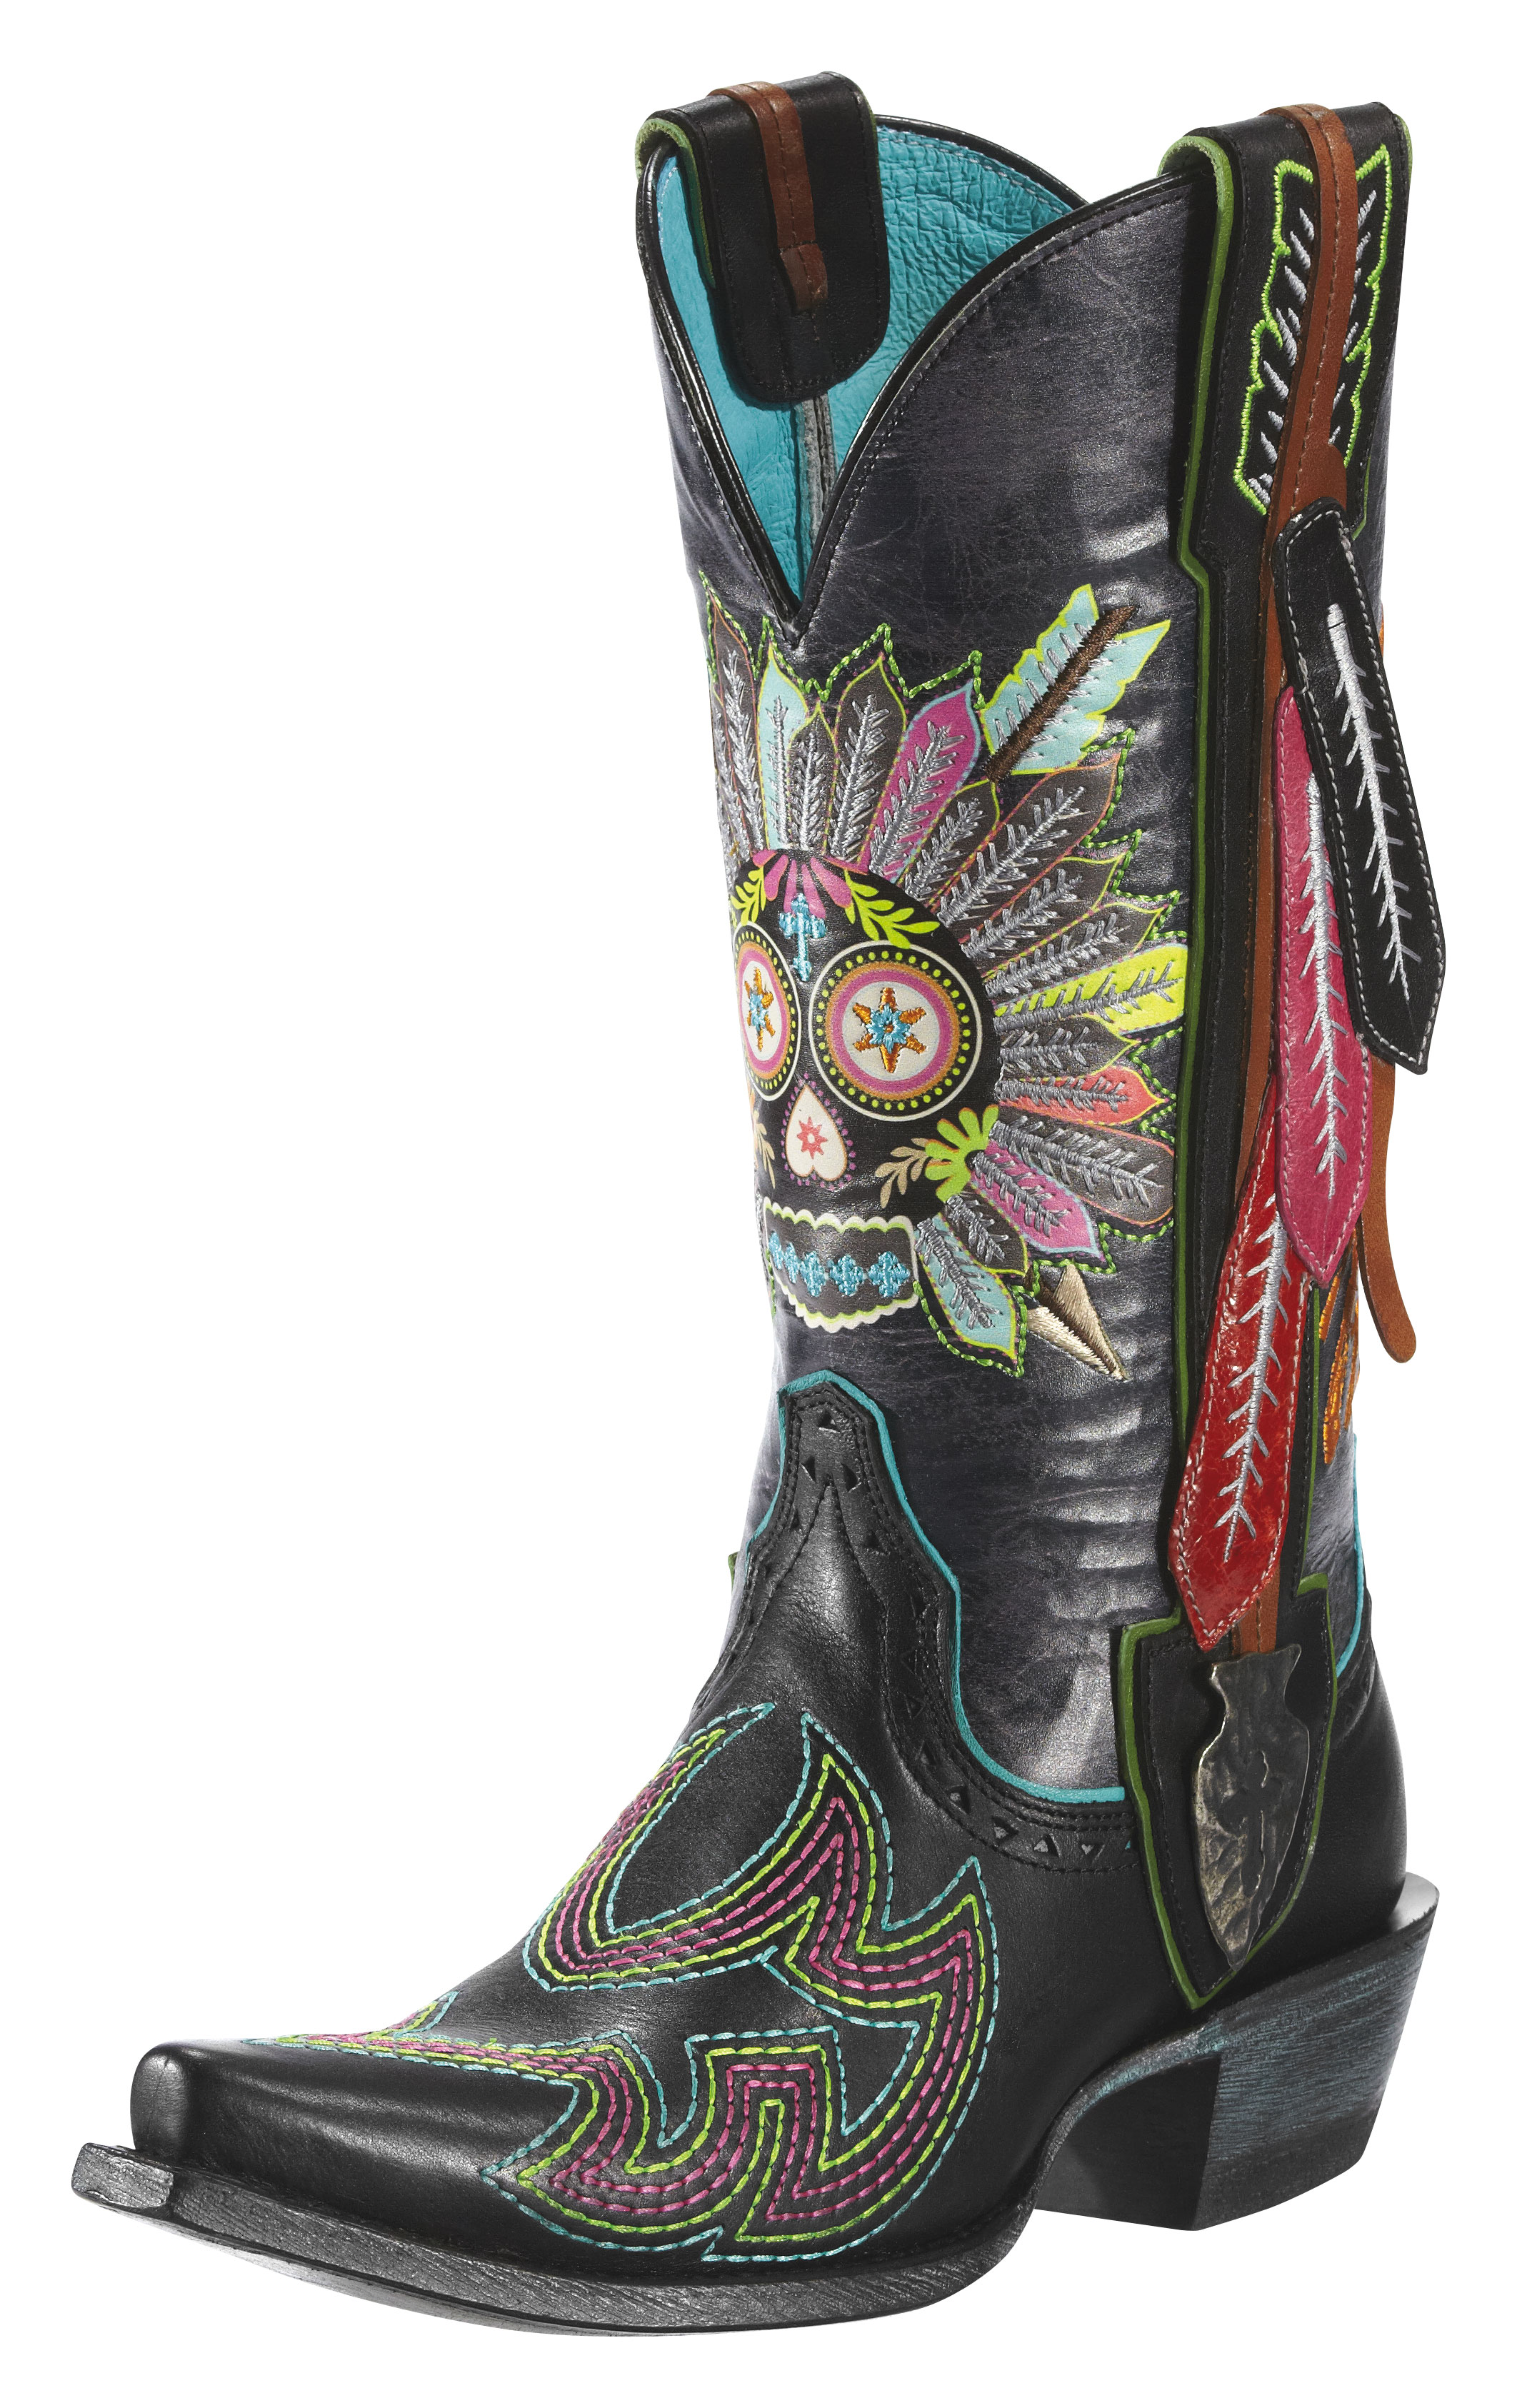 Ariat \u0026 Gypsy Soule Cowboy Boot 